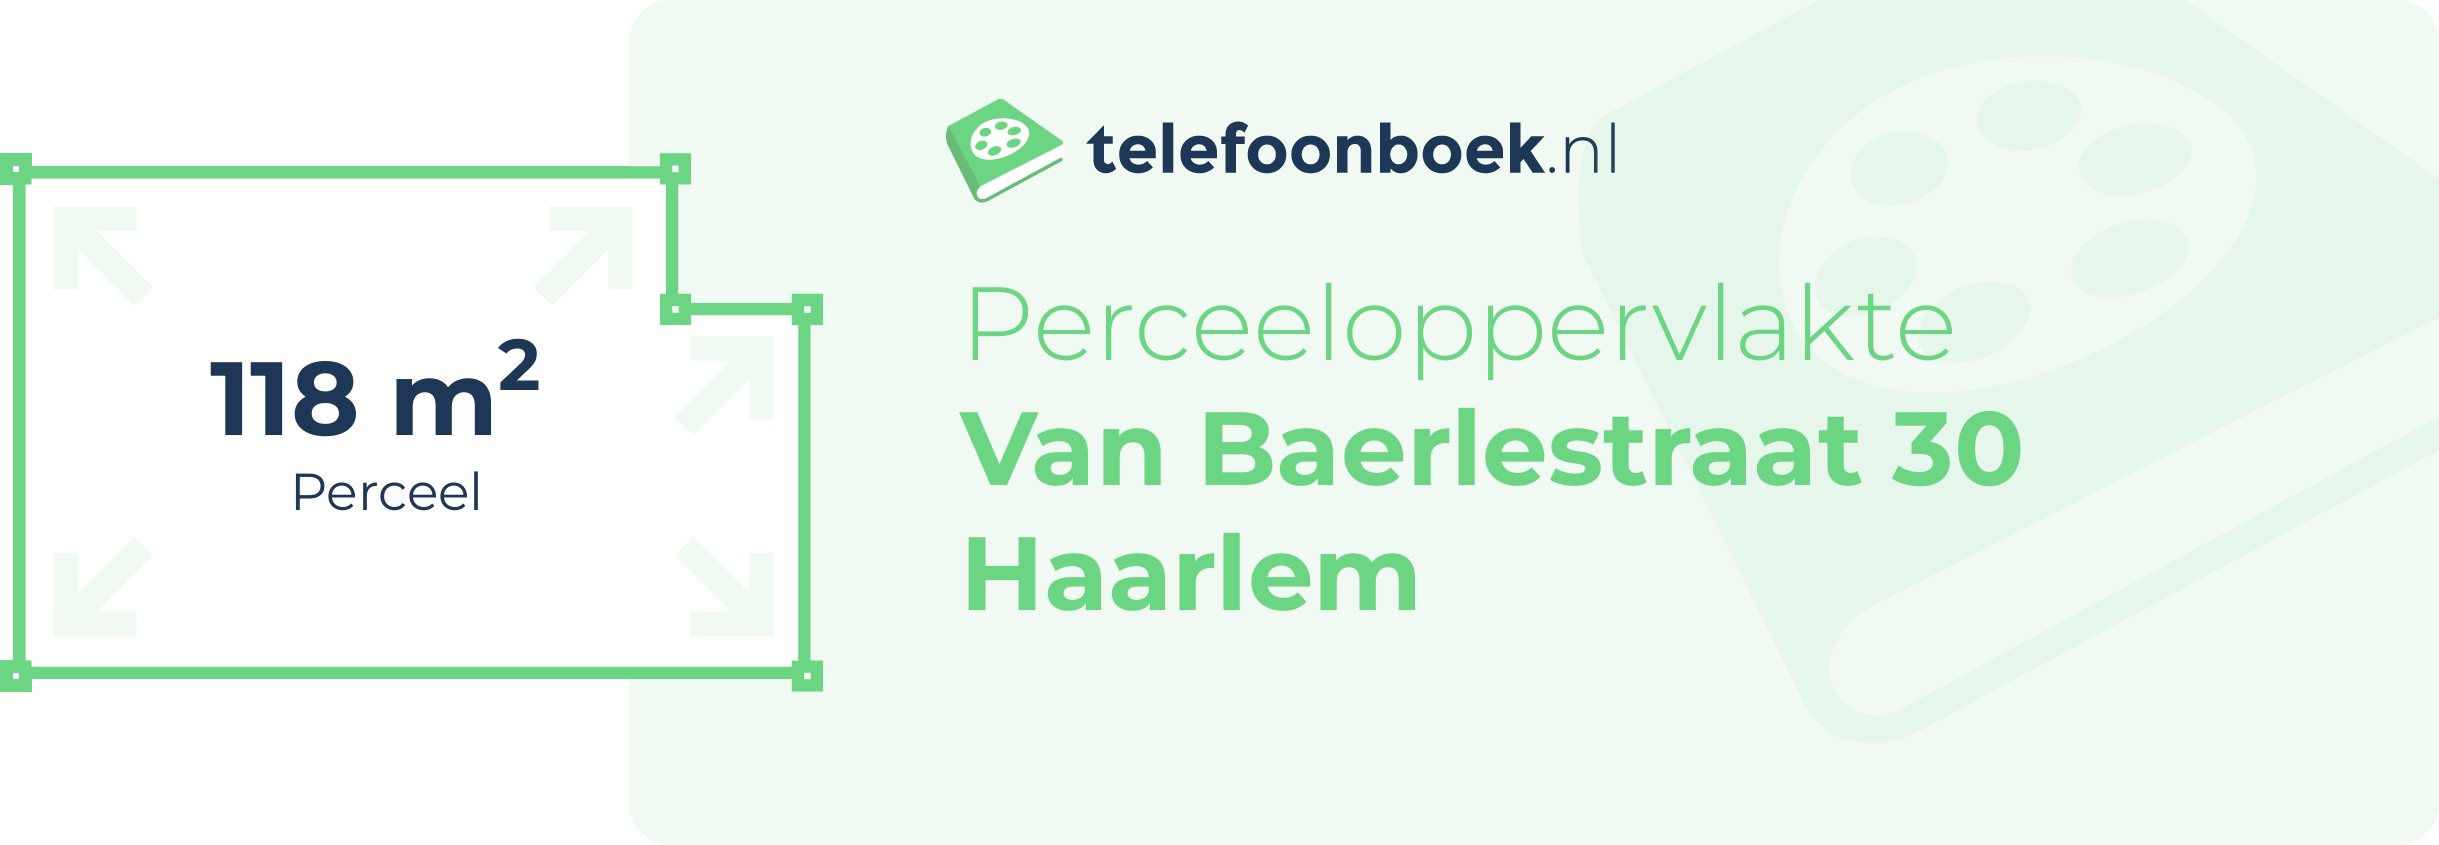 Perceeloppervlakte Van Baerlestraat 30 Haarlem